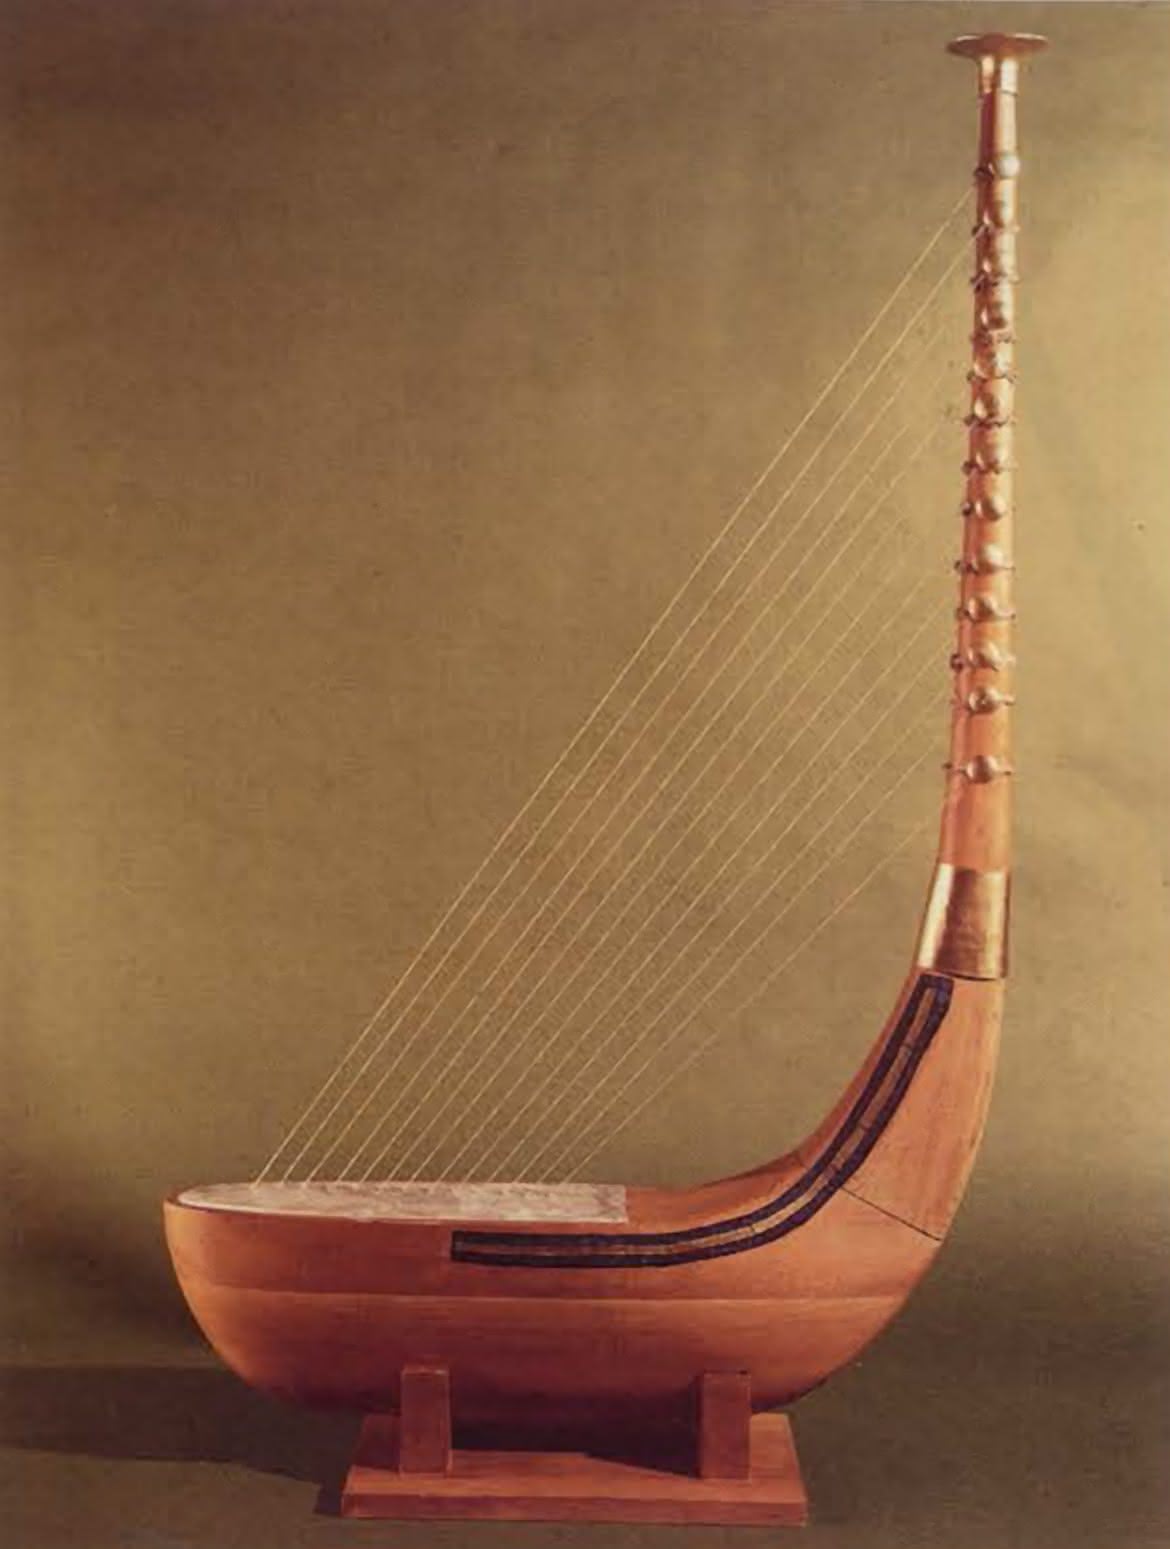 Jak omikrofonować i nagłośnić... Harfę